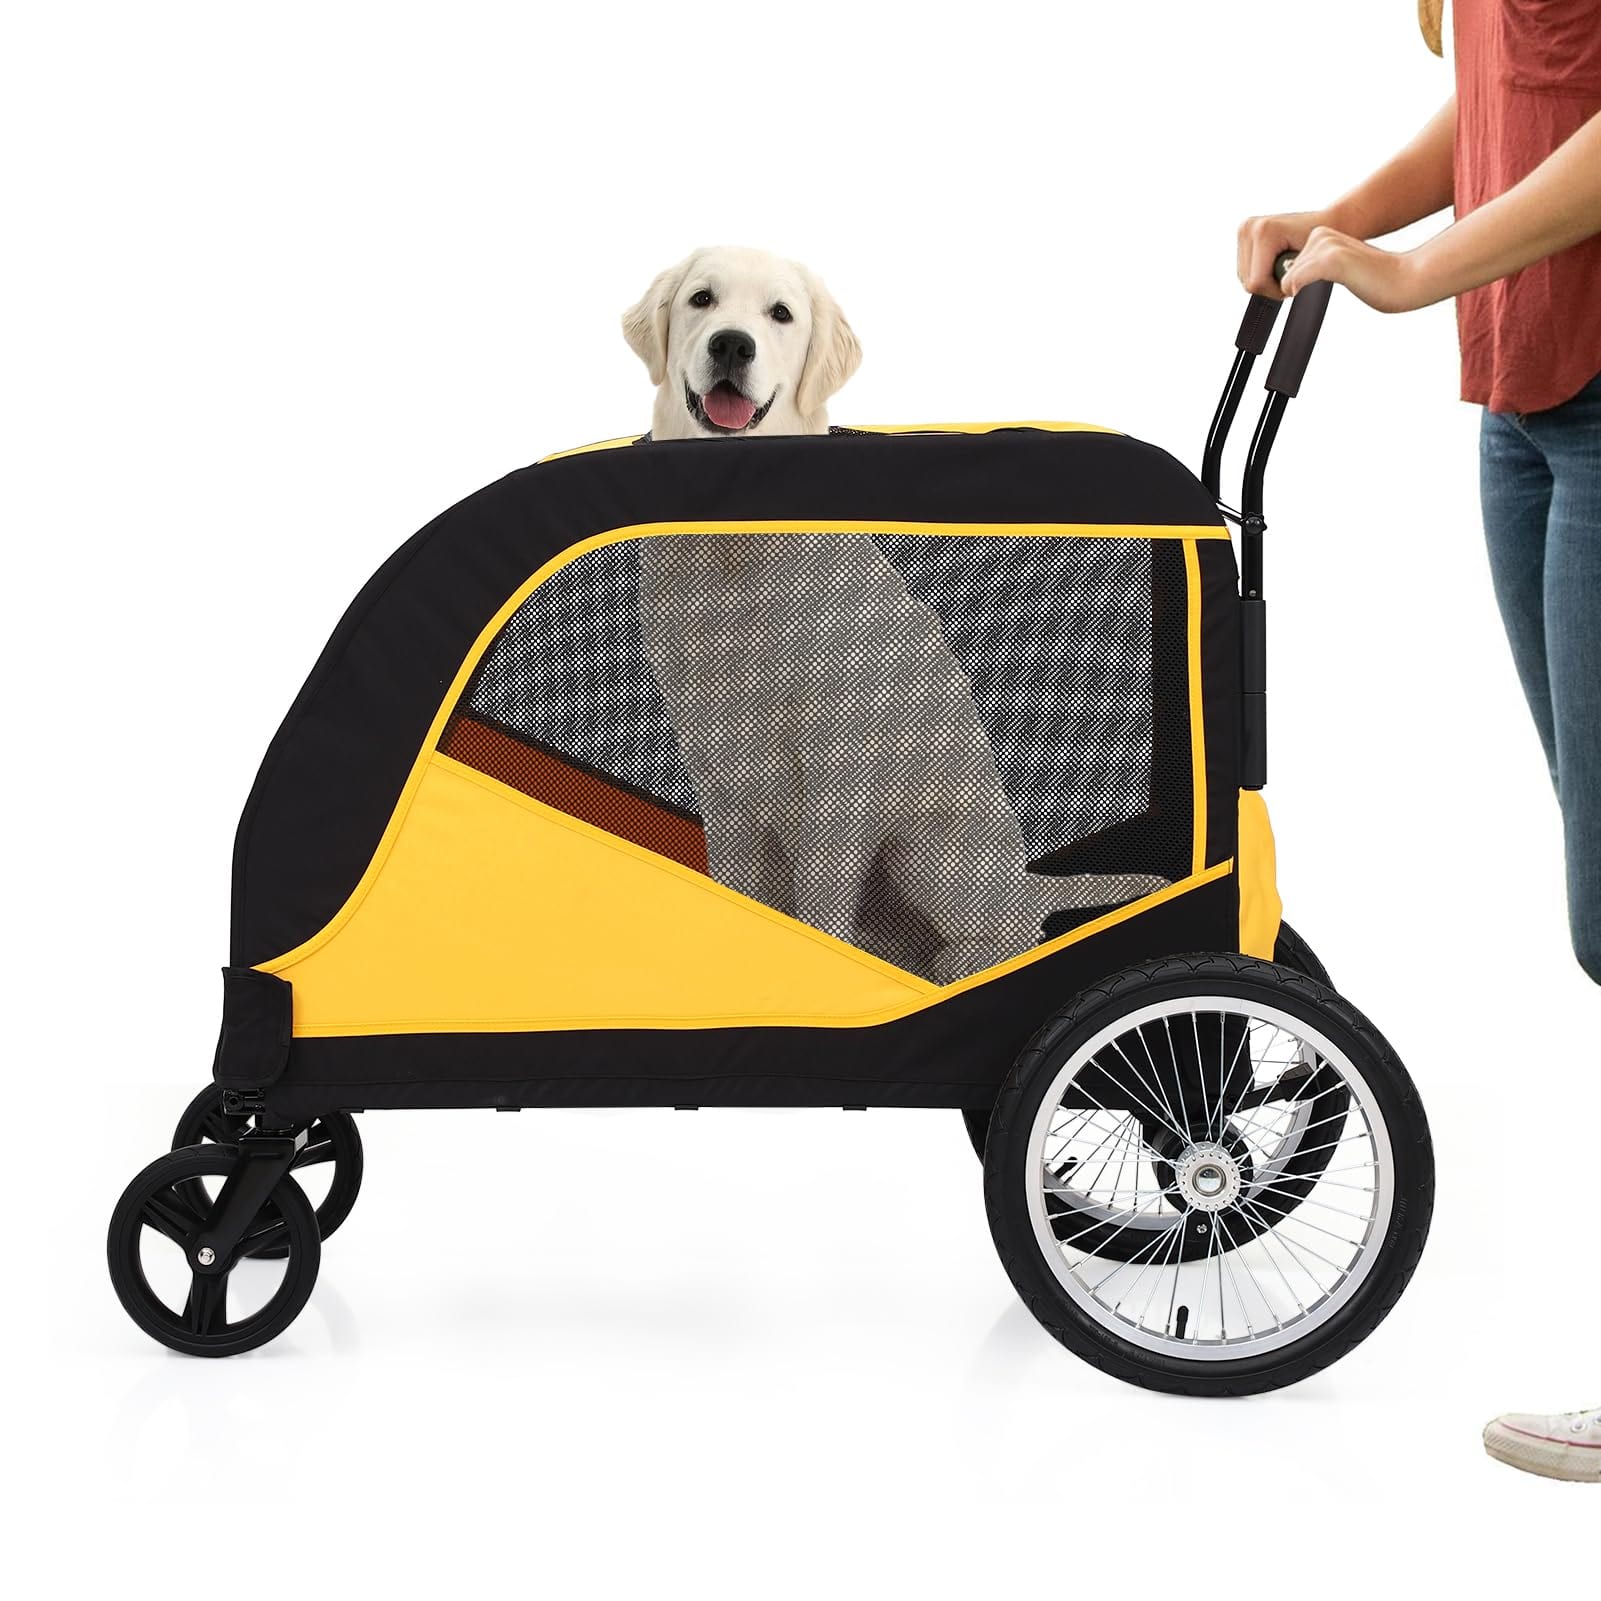 Dog Stroller for Large Pet Jogger Stroller with 4 Wheel